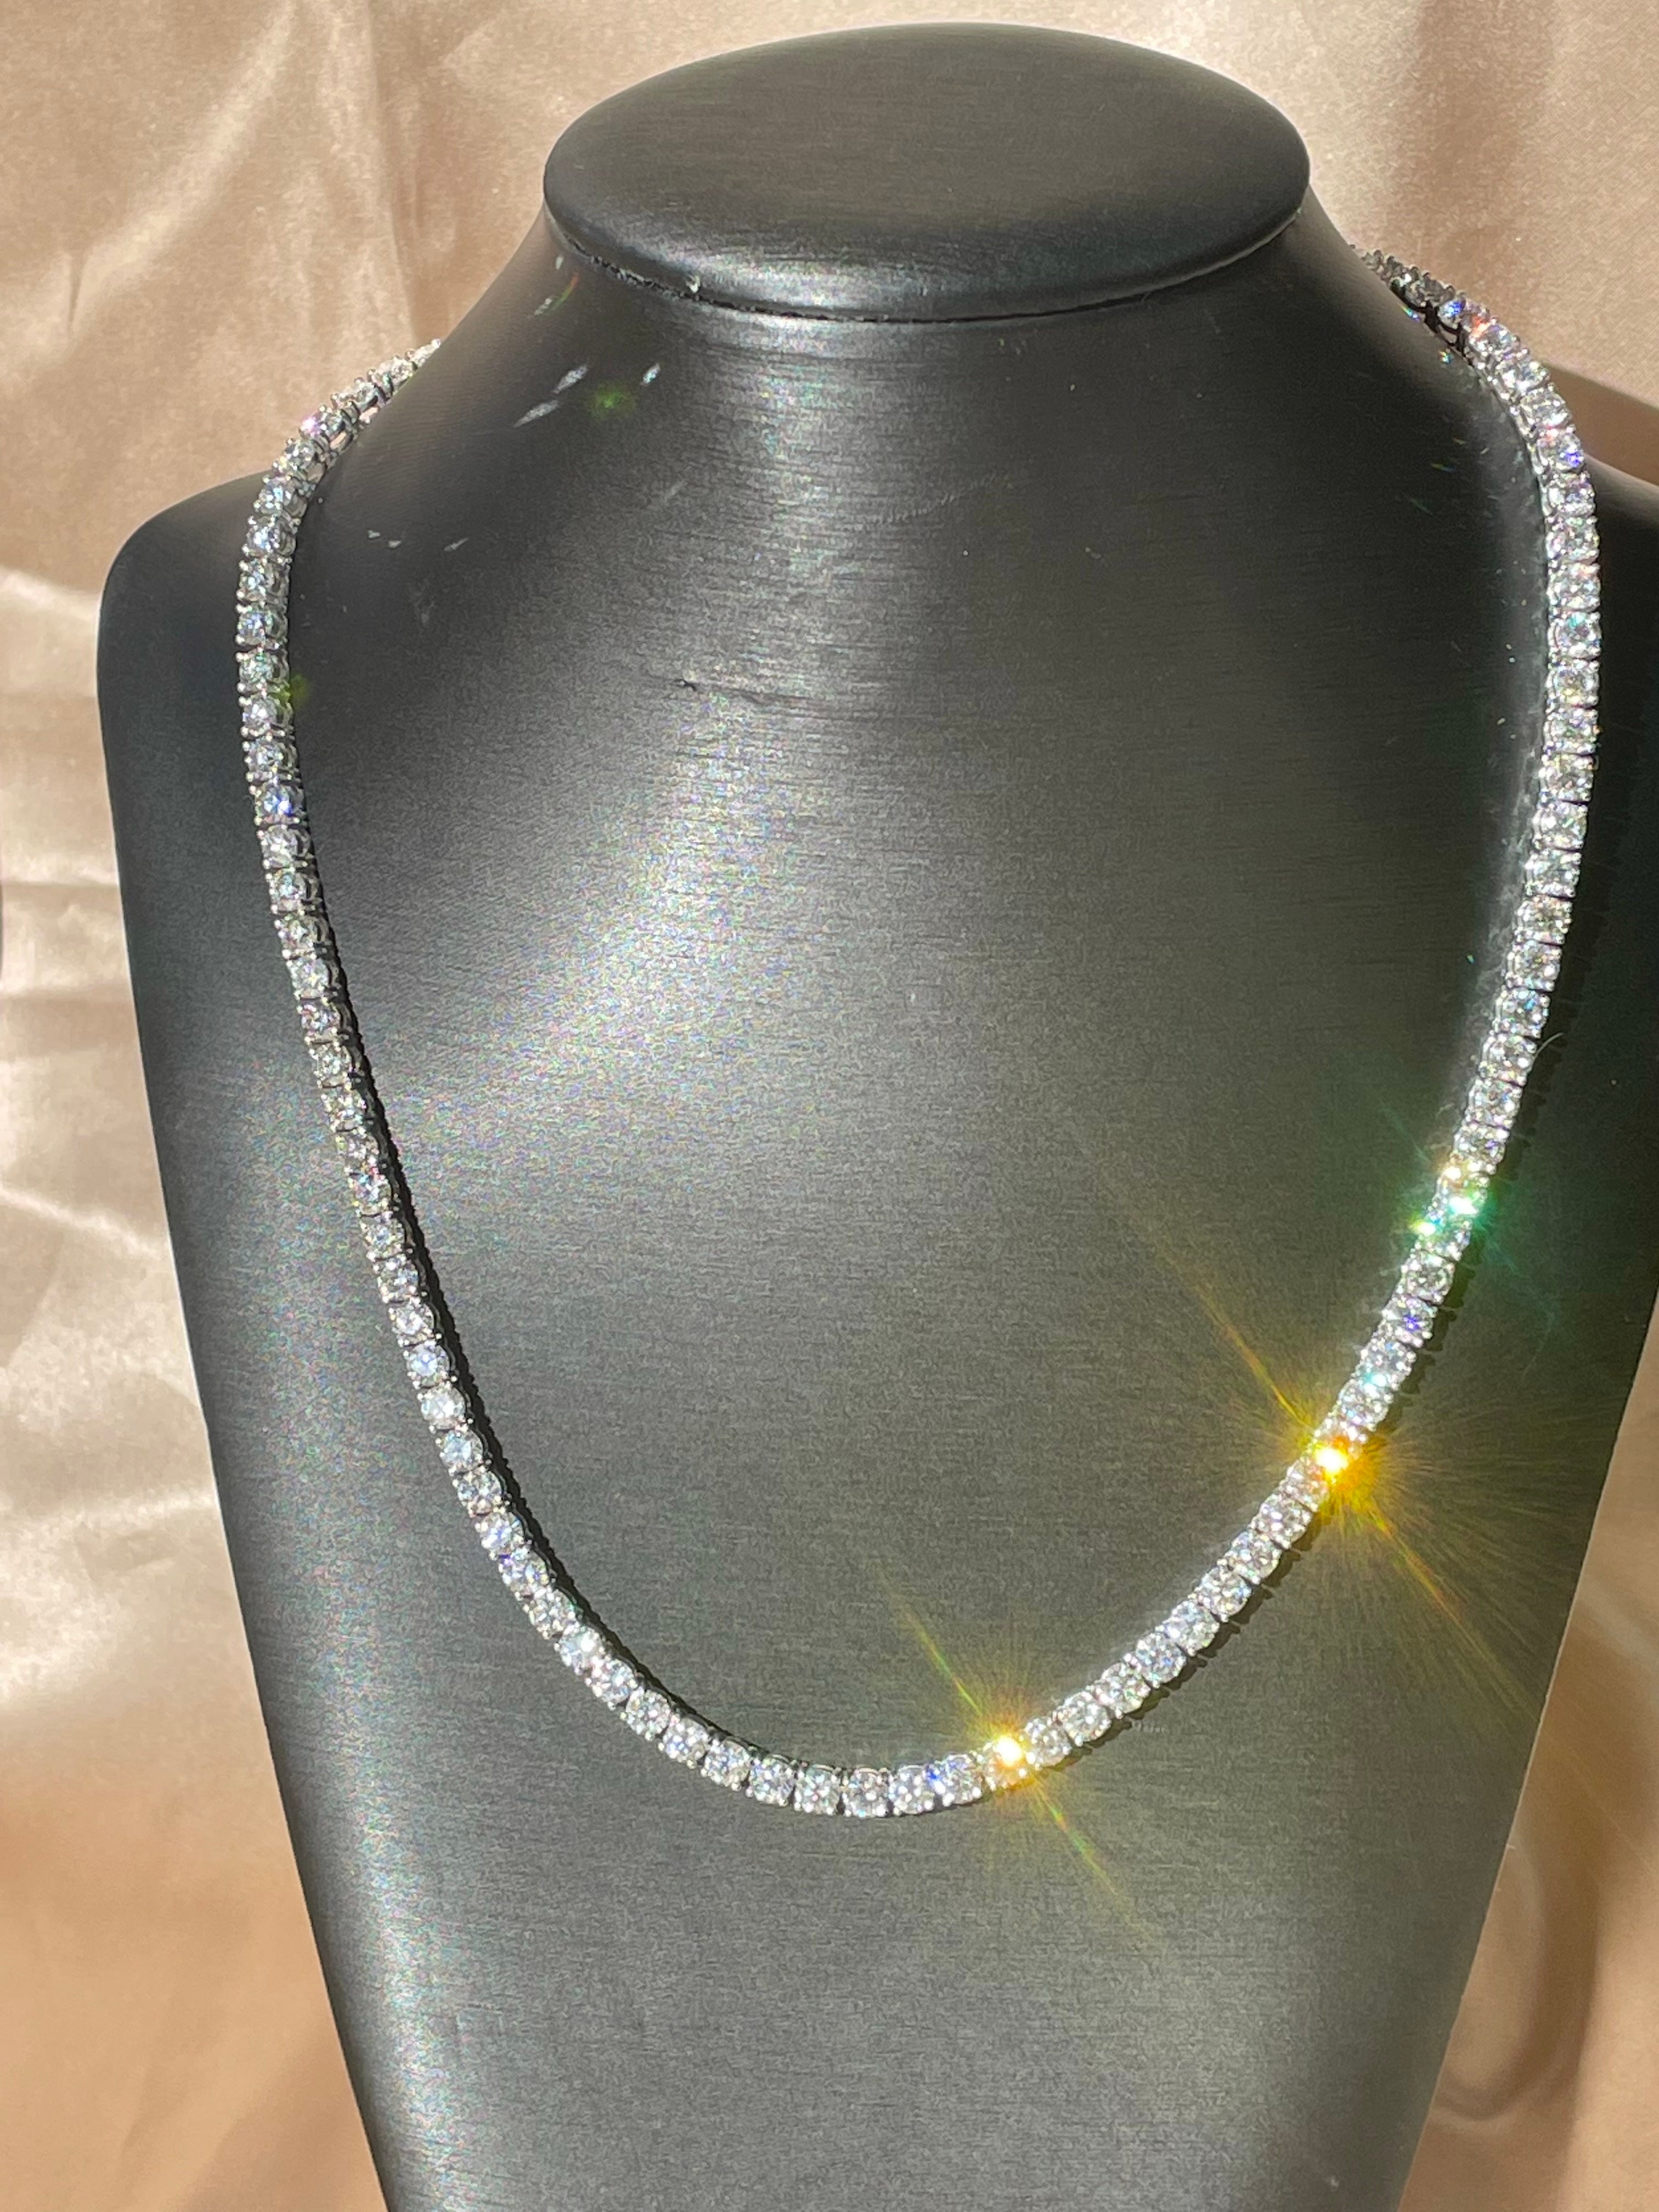 Klassische und vielseitige Halskette, die sich mit jedem Outfit kombinieren lässt. Diese aufsehenerregende Reihe runder natürlicher Diamanten ist in einer Zackenfassung perfekt aneinandergereiht, um ein elegantes, aufsehenerregendes Diamantcollier